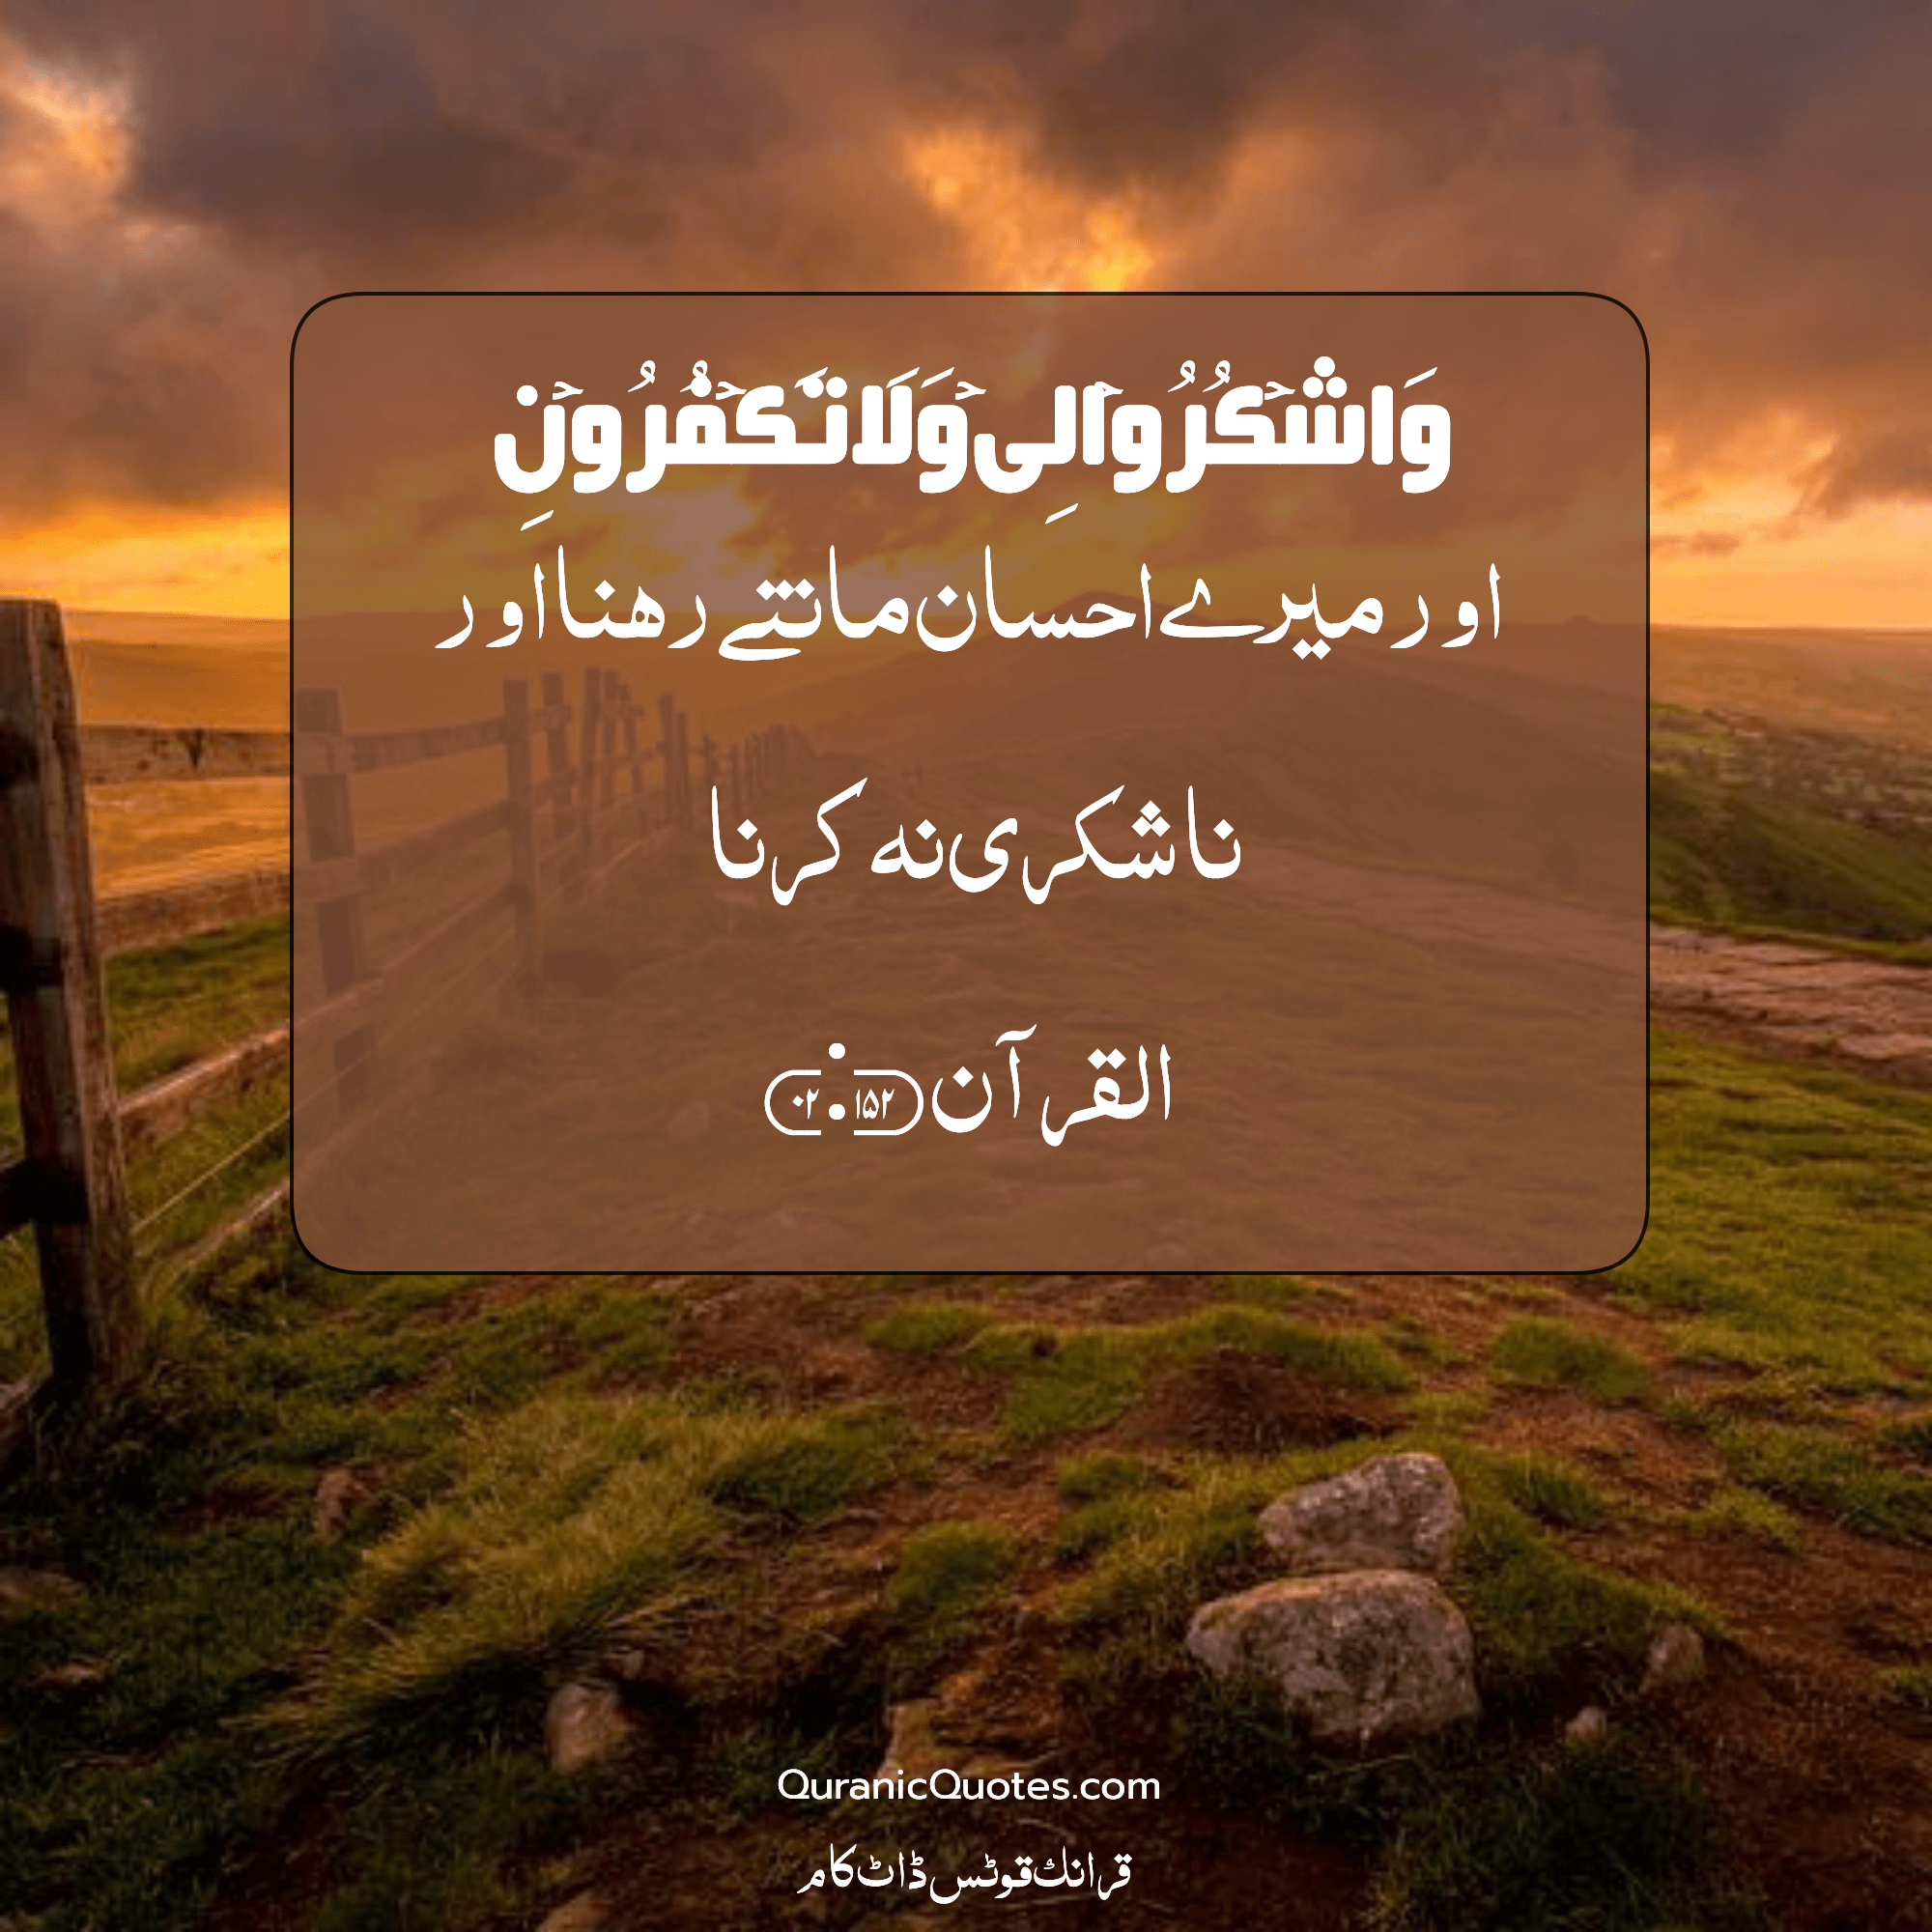 Quranic Quotes Urdu #205